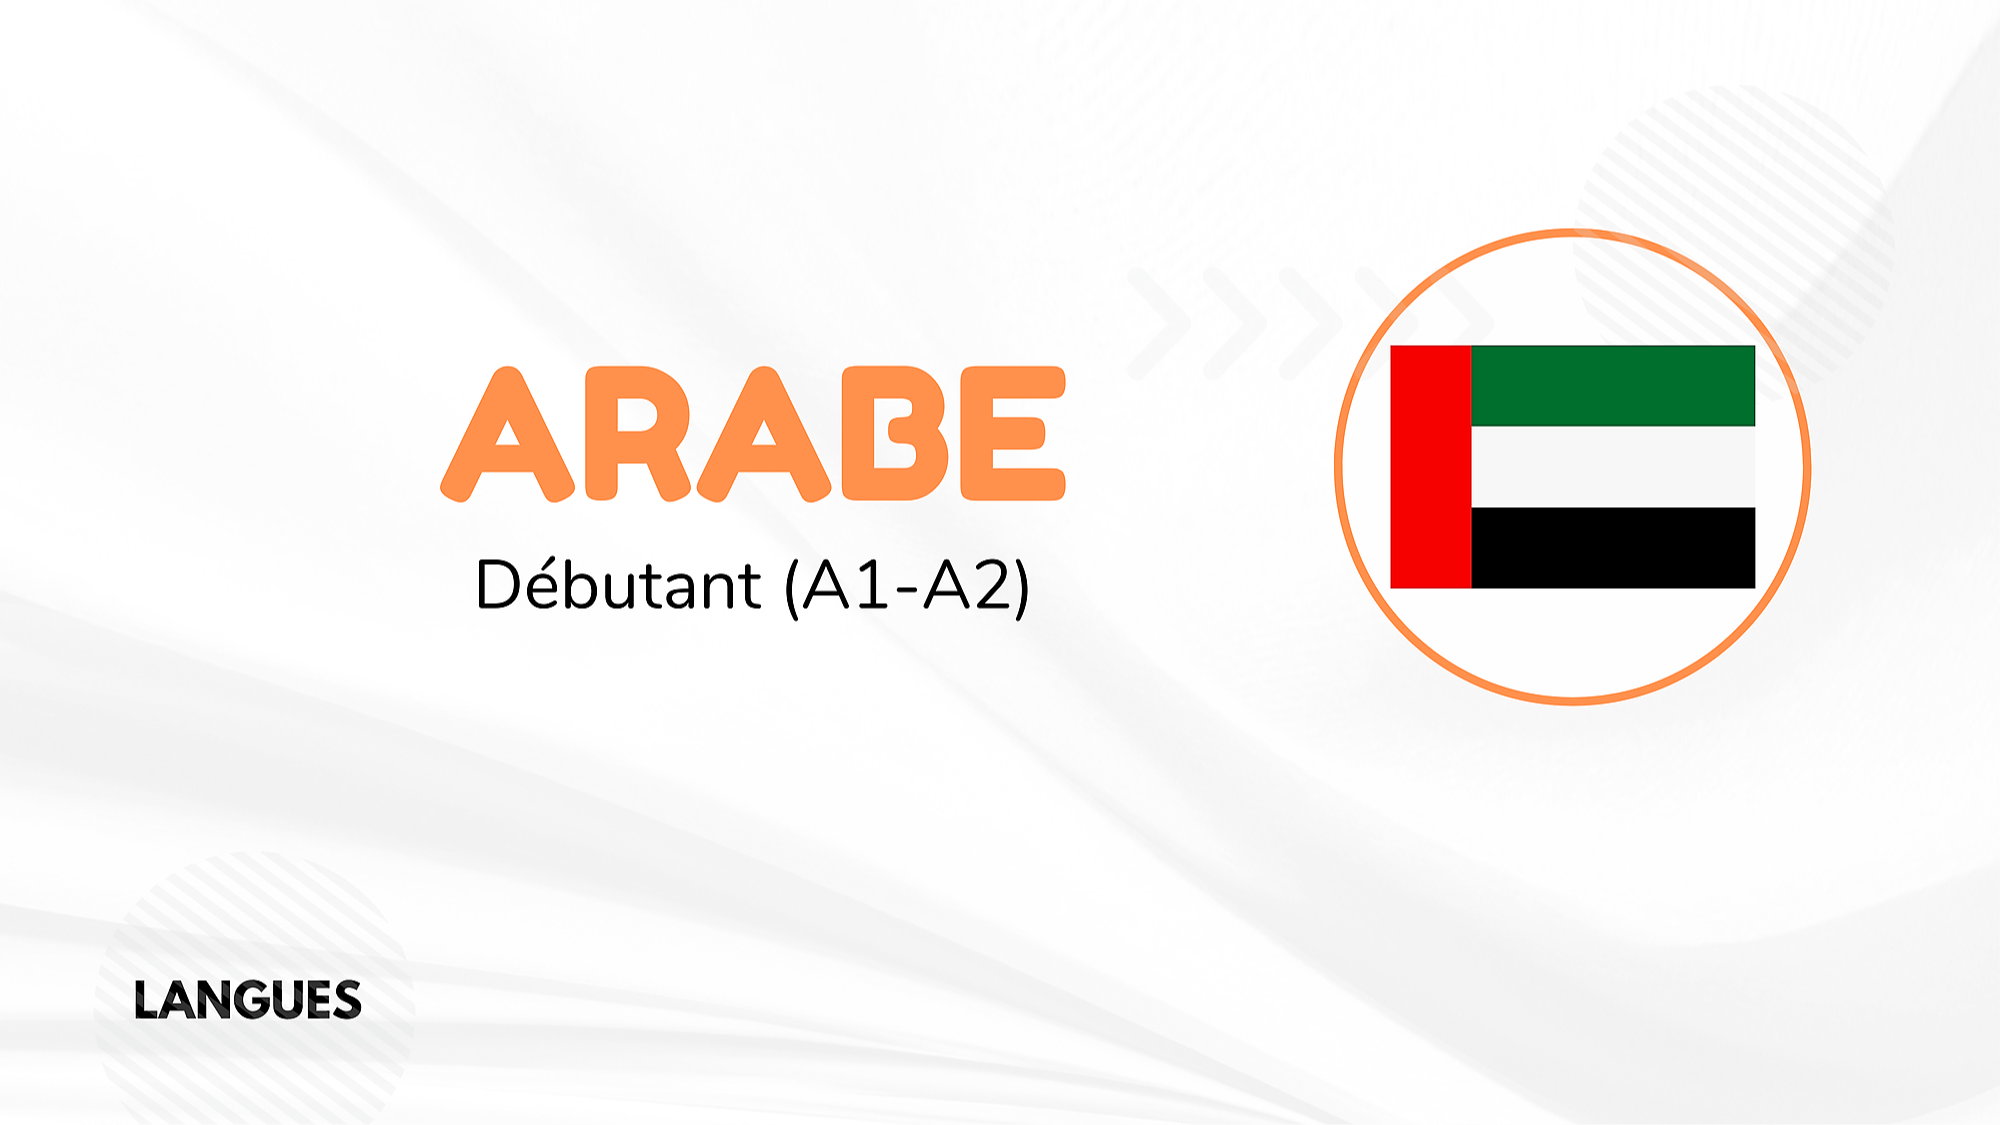 Représentation de la formation : ARABE - DÉBUTANT (A1-A2)